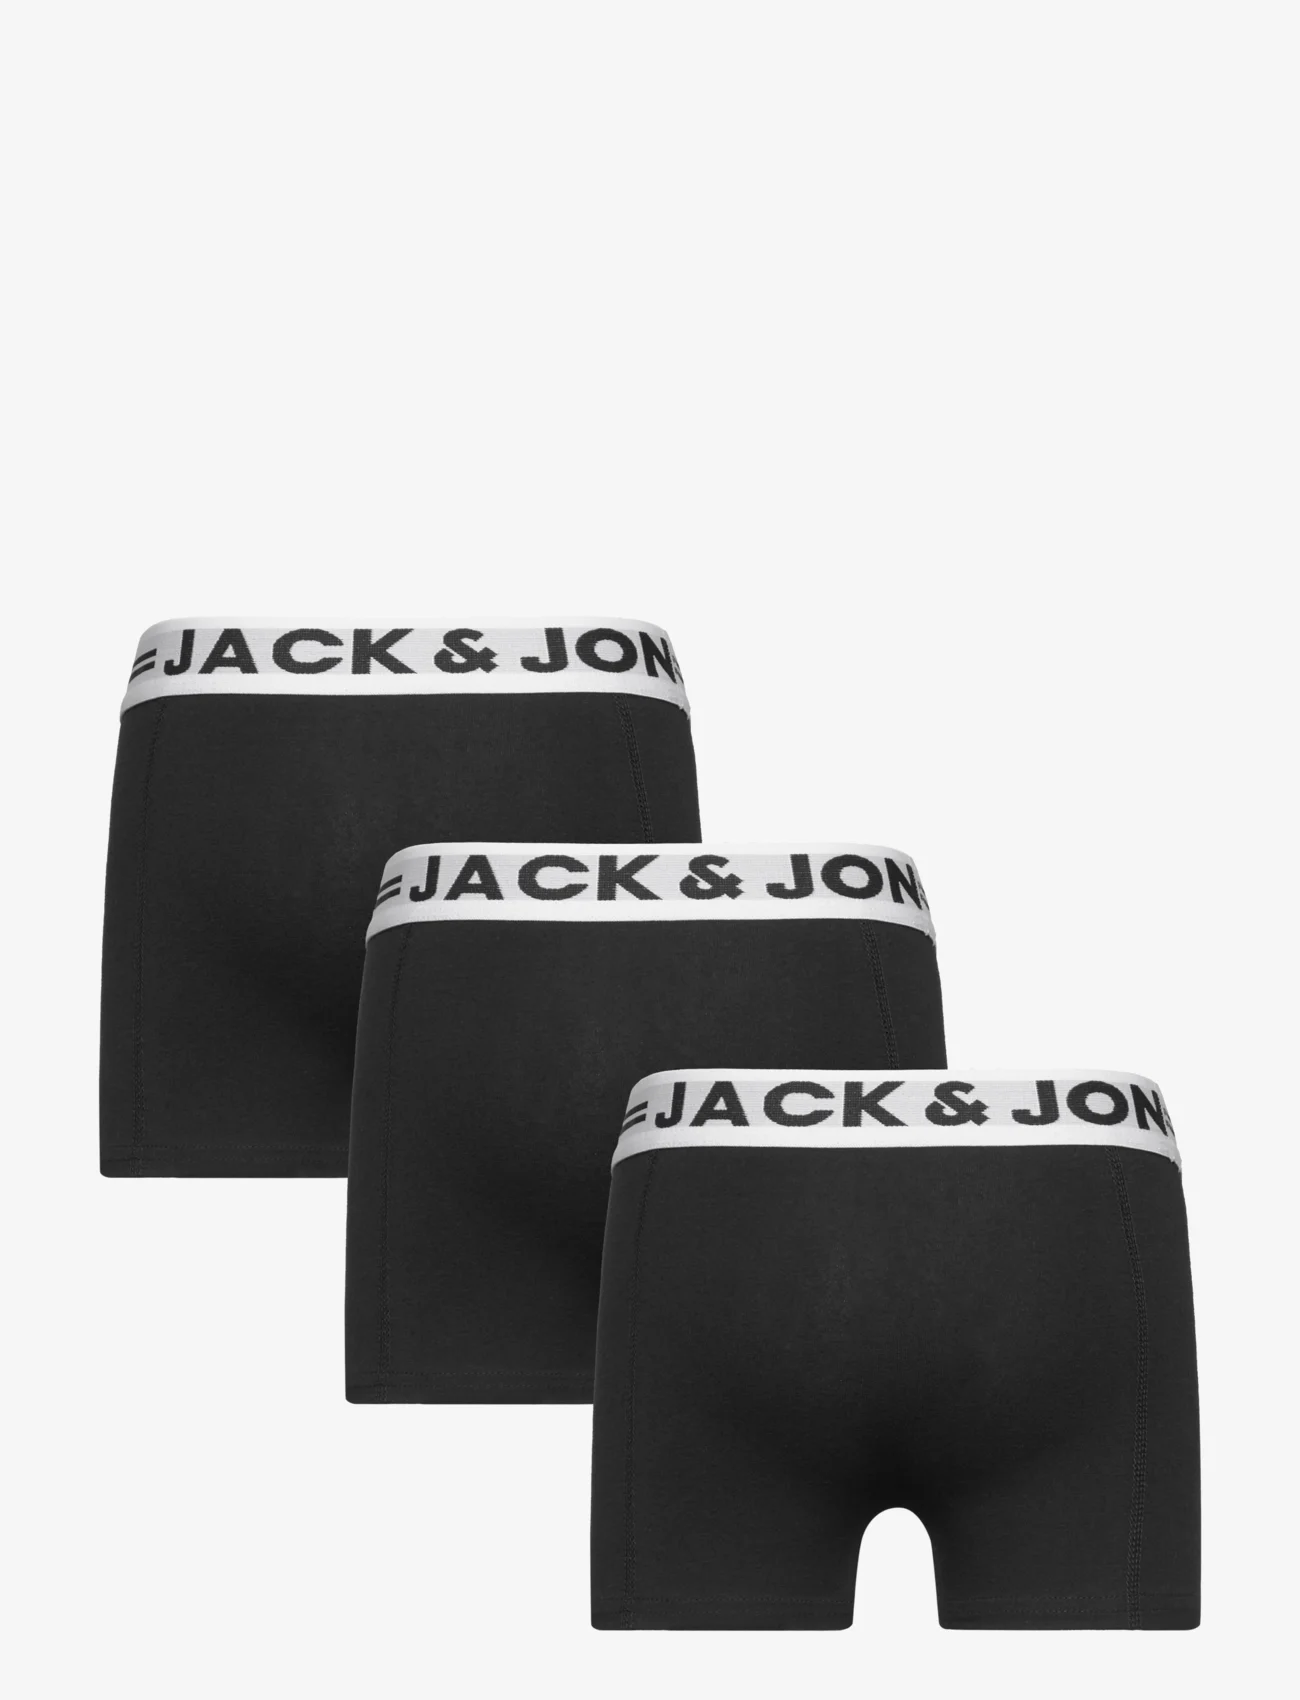 Jack & Jones - SENSE TRUNKS 3-PACK NOOS MNI - onderbroeken - black - 1